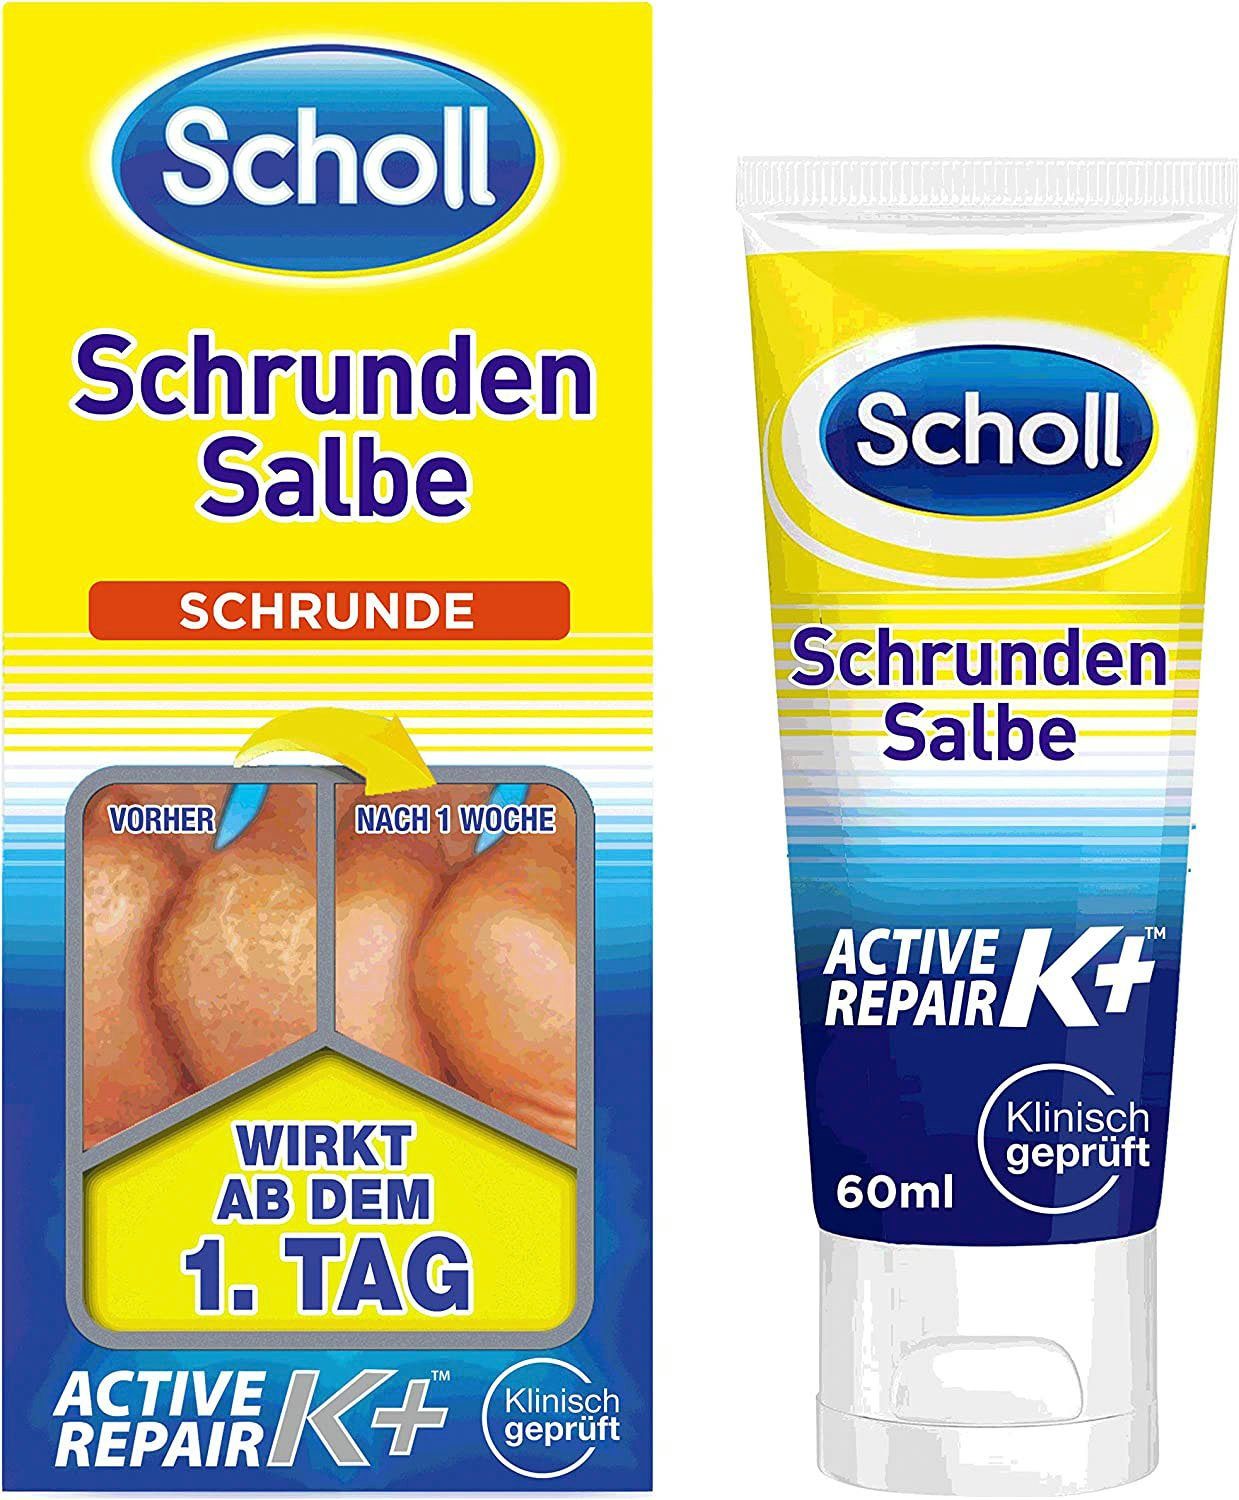 Fußcreme Schrunden Scholl K+, Salbe Active Repair